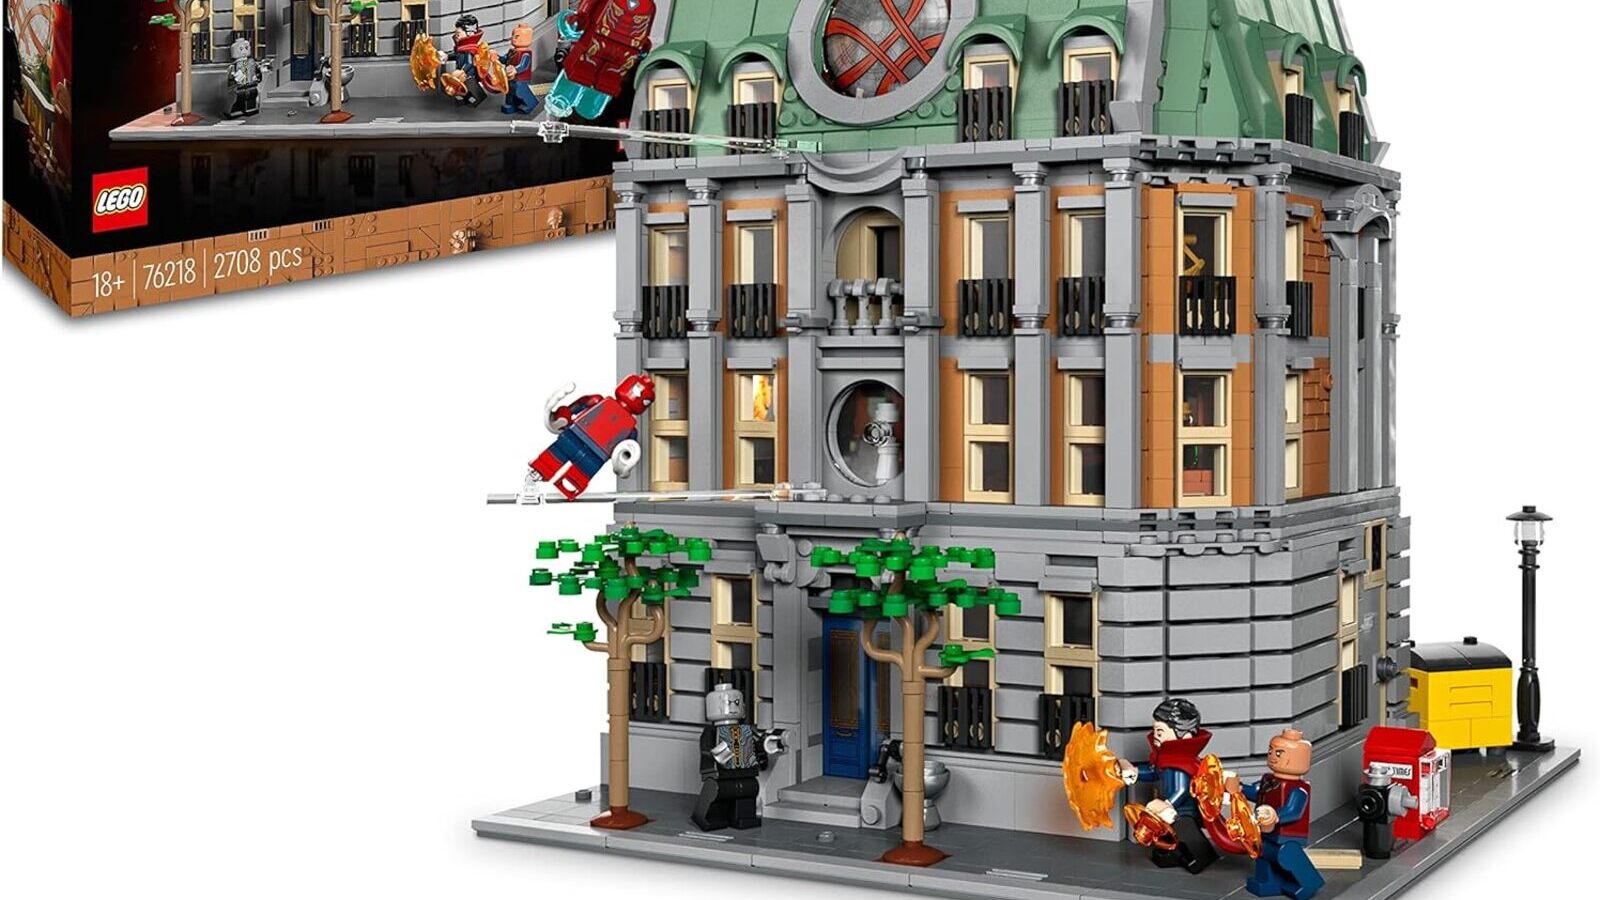 Marvel: lo spettacolare set LEGO che ricostruisce il Sanctum Sanctorum di Doctor Strange è in sconto su Amazon